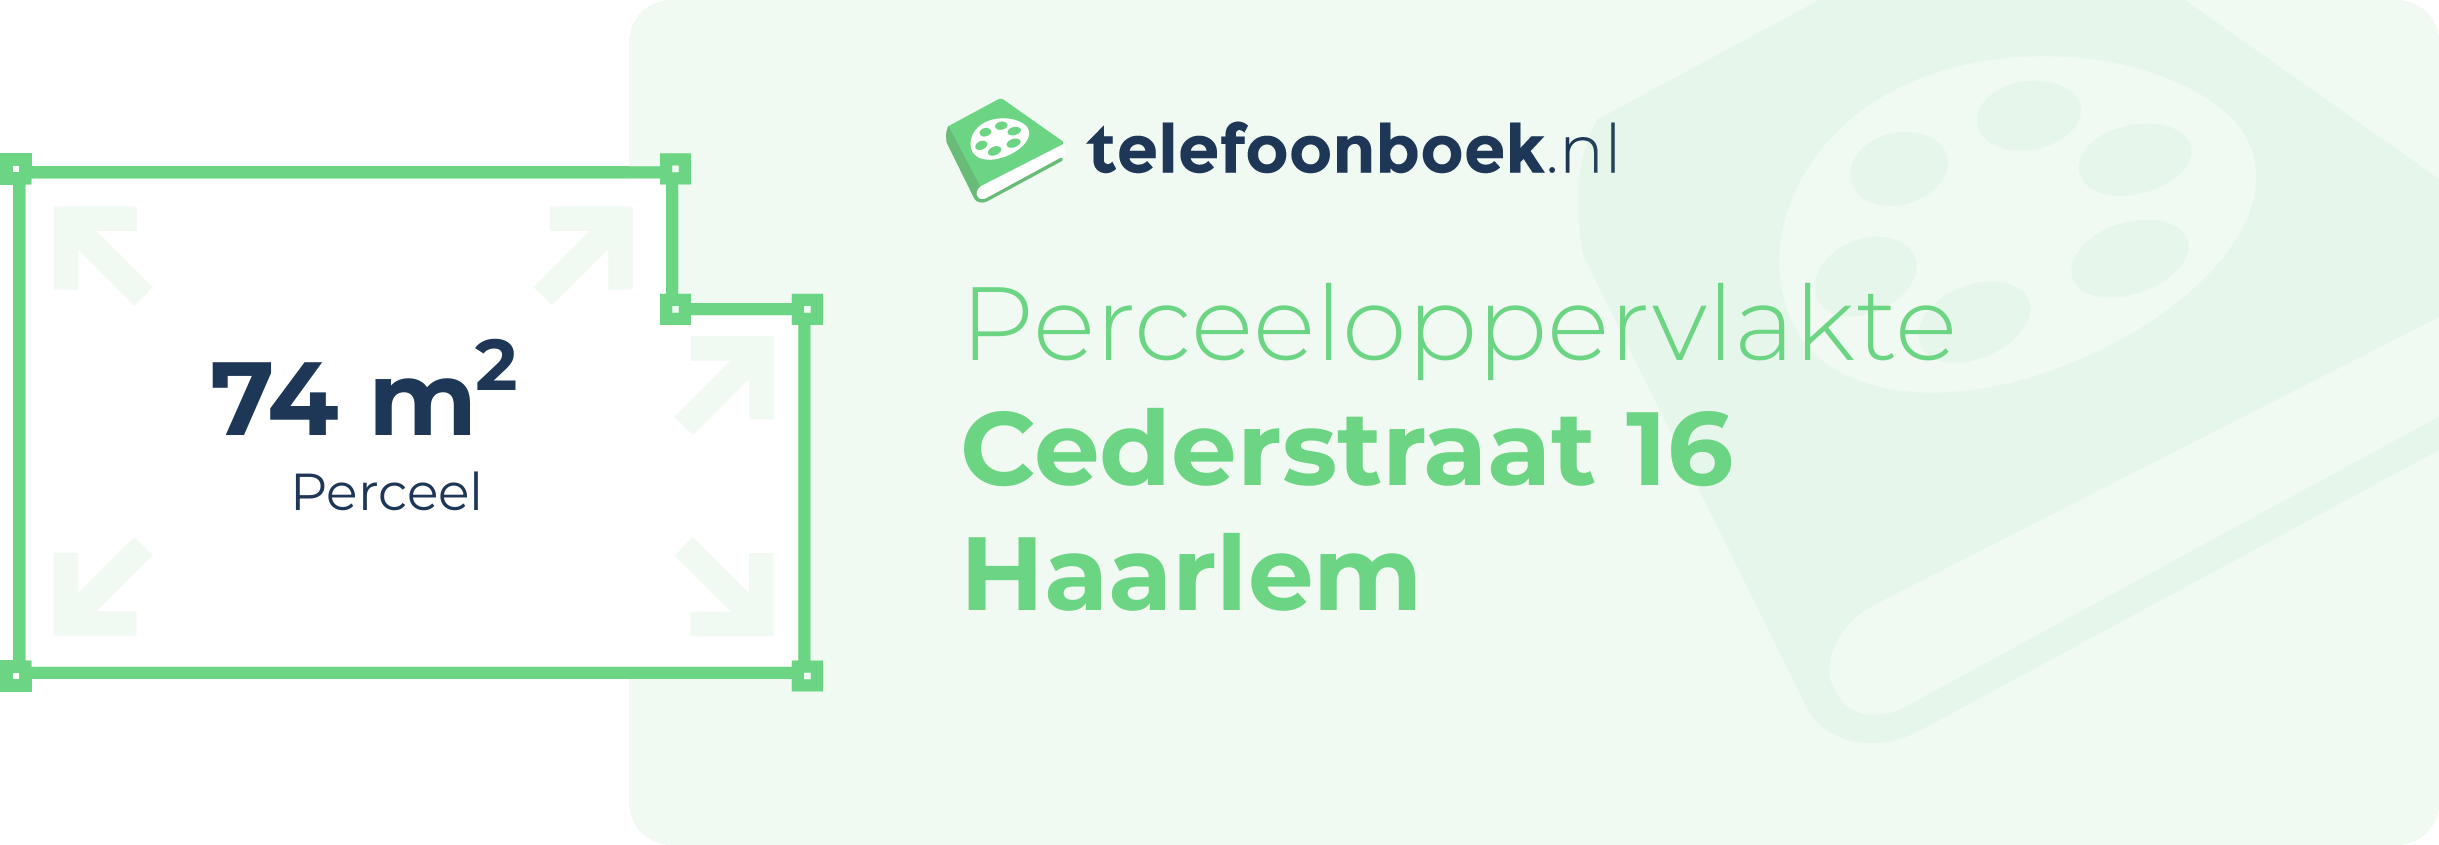 Perceeloppervlakte Cederstraat 16 Haarlem